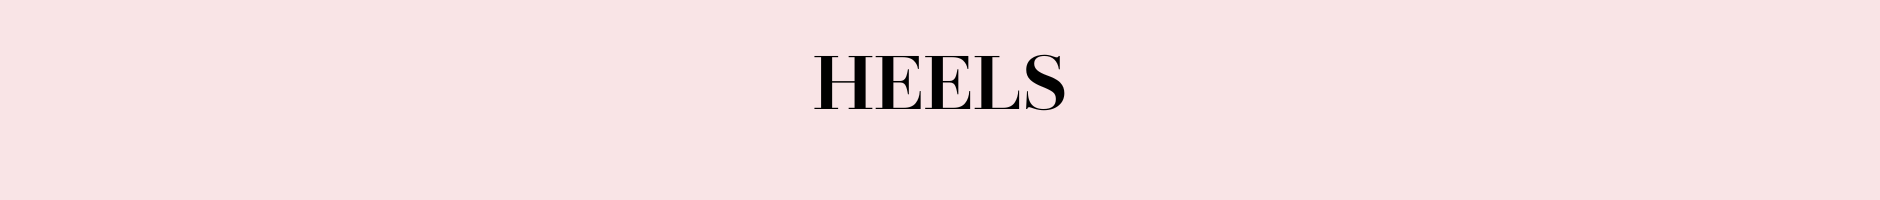 heels.png